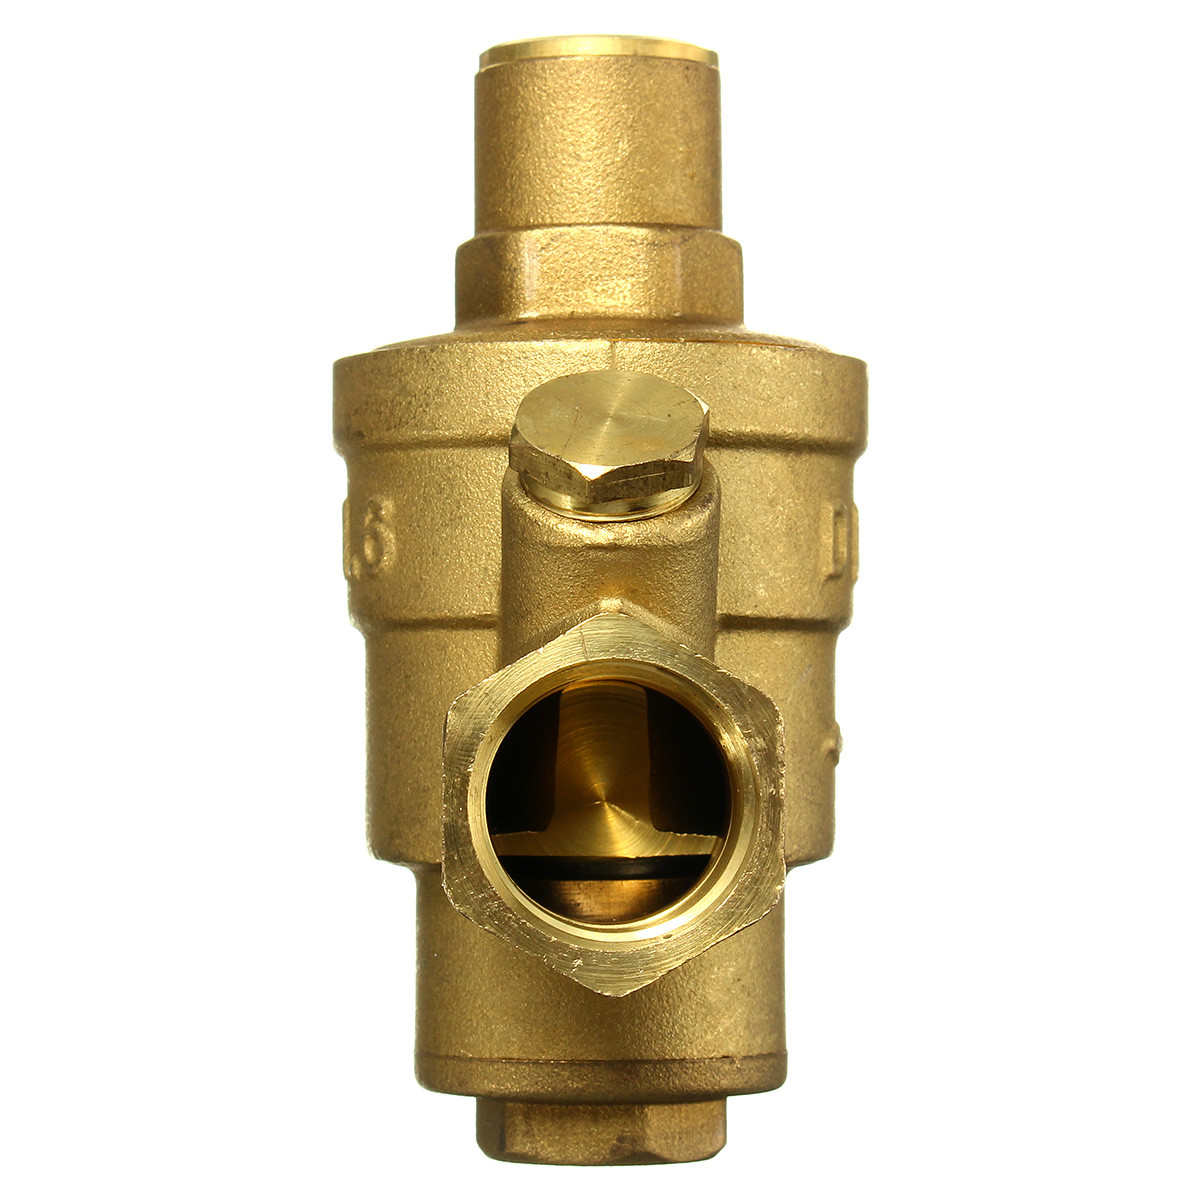 Adjustable-DN15-Bspp-Brass-Water-Pressure-Reducing-Valve-with-Gauge-Flow-1104771-7